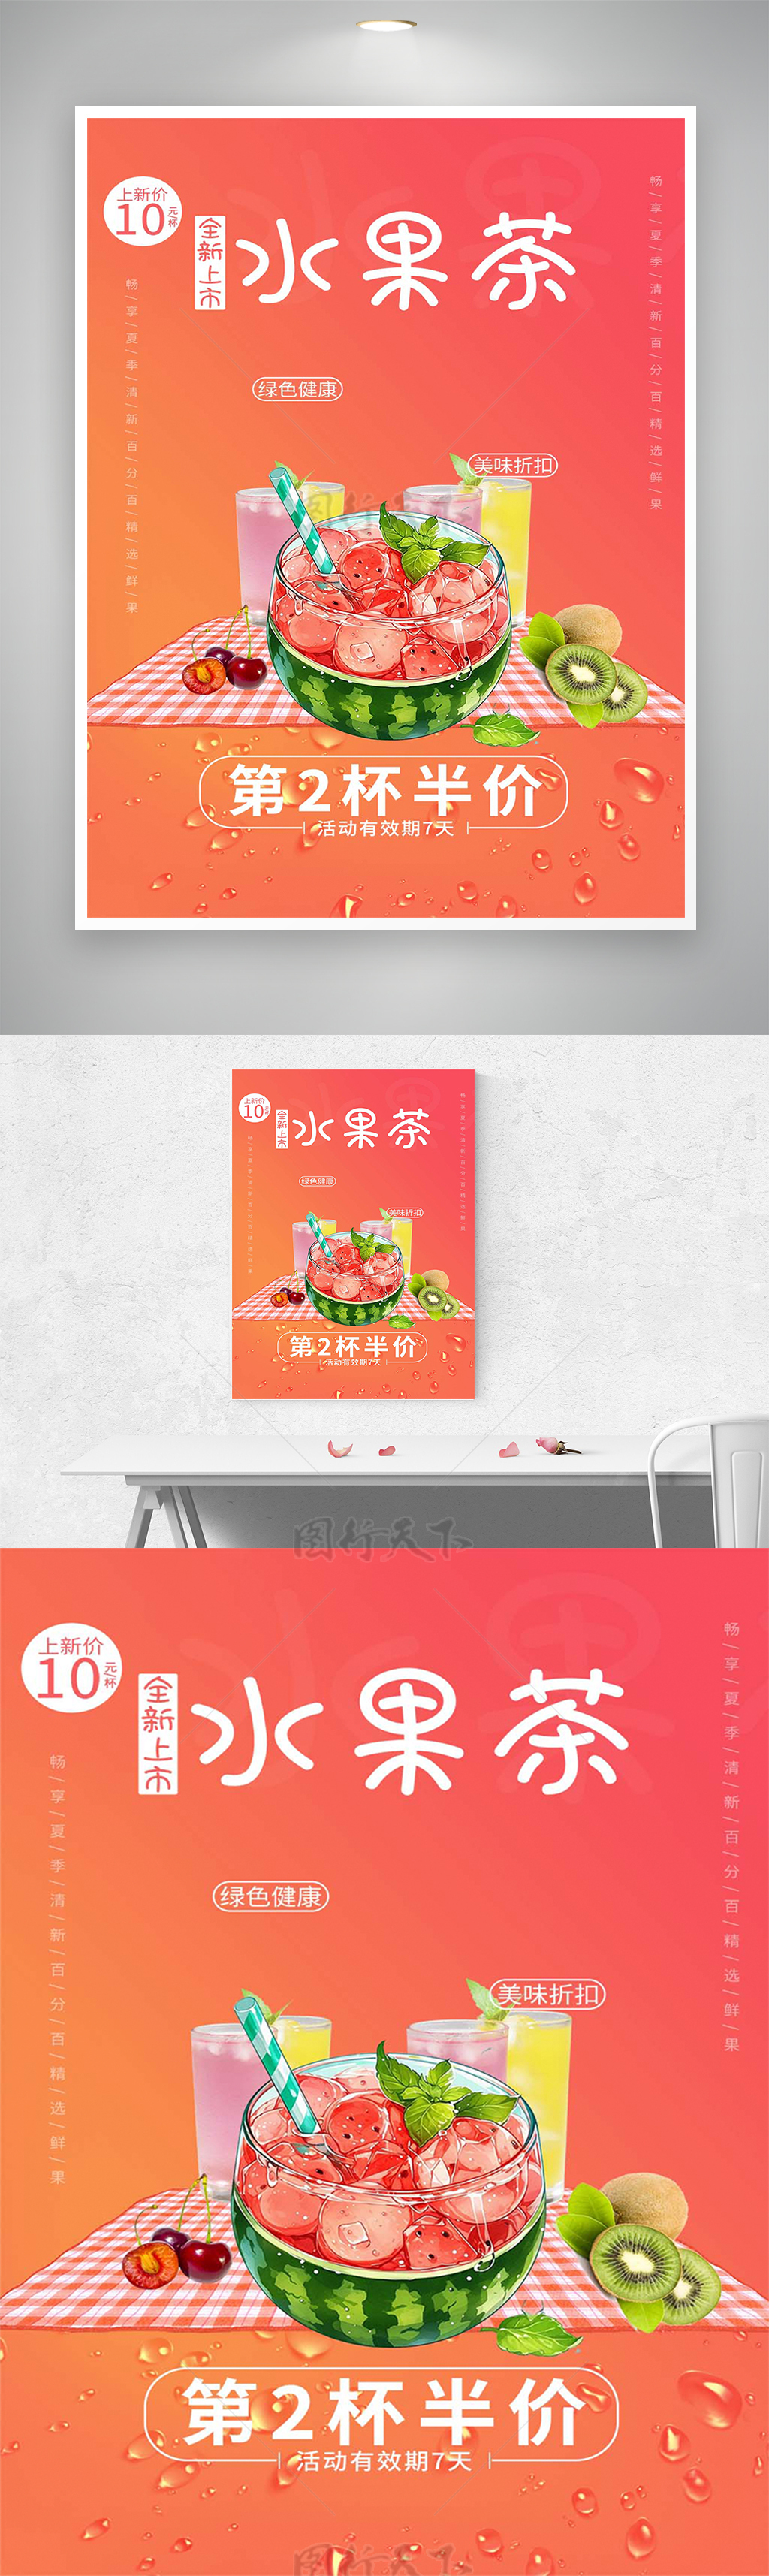 夏季清新水果茶活动促销海报